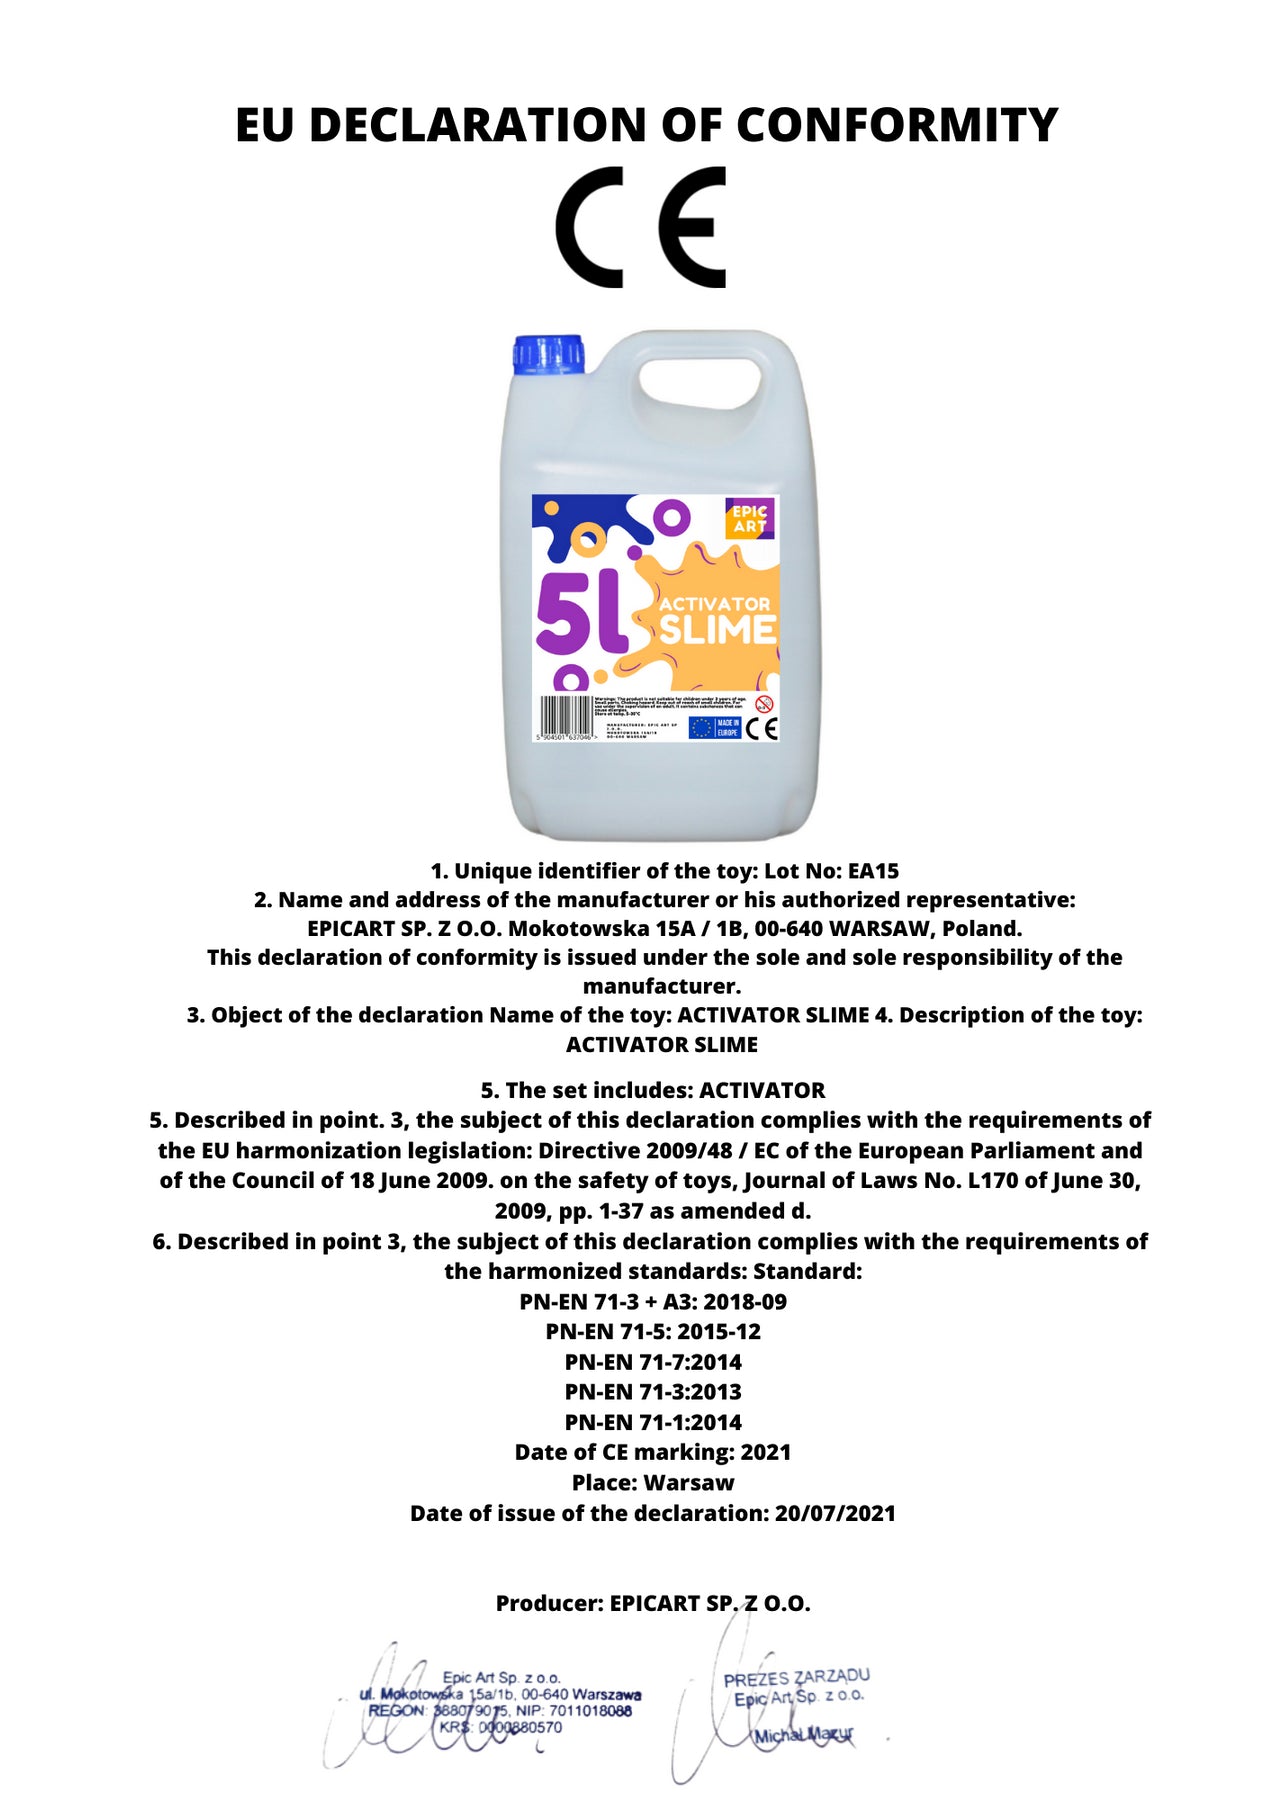 Activateur liquide, 5L pour Slime, 5000ml - Epic Art Poland –  Euroelectronics FR